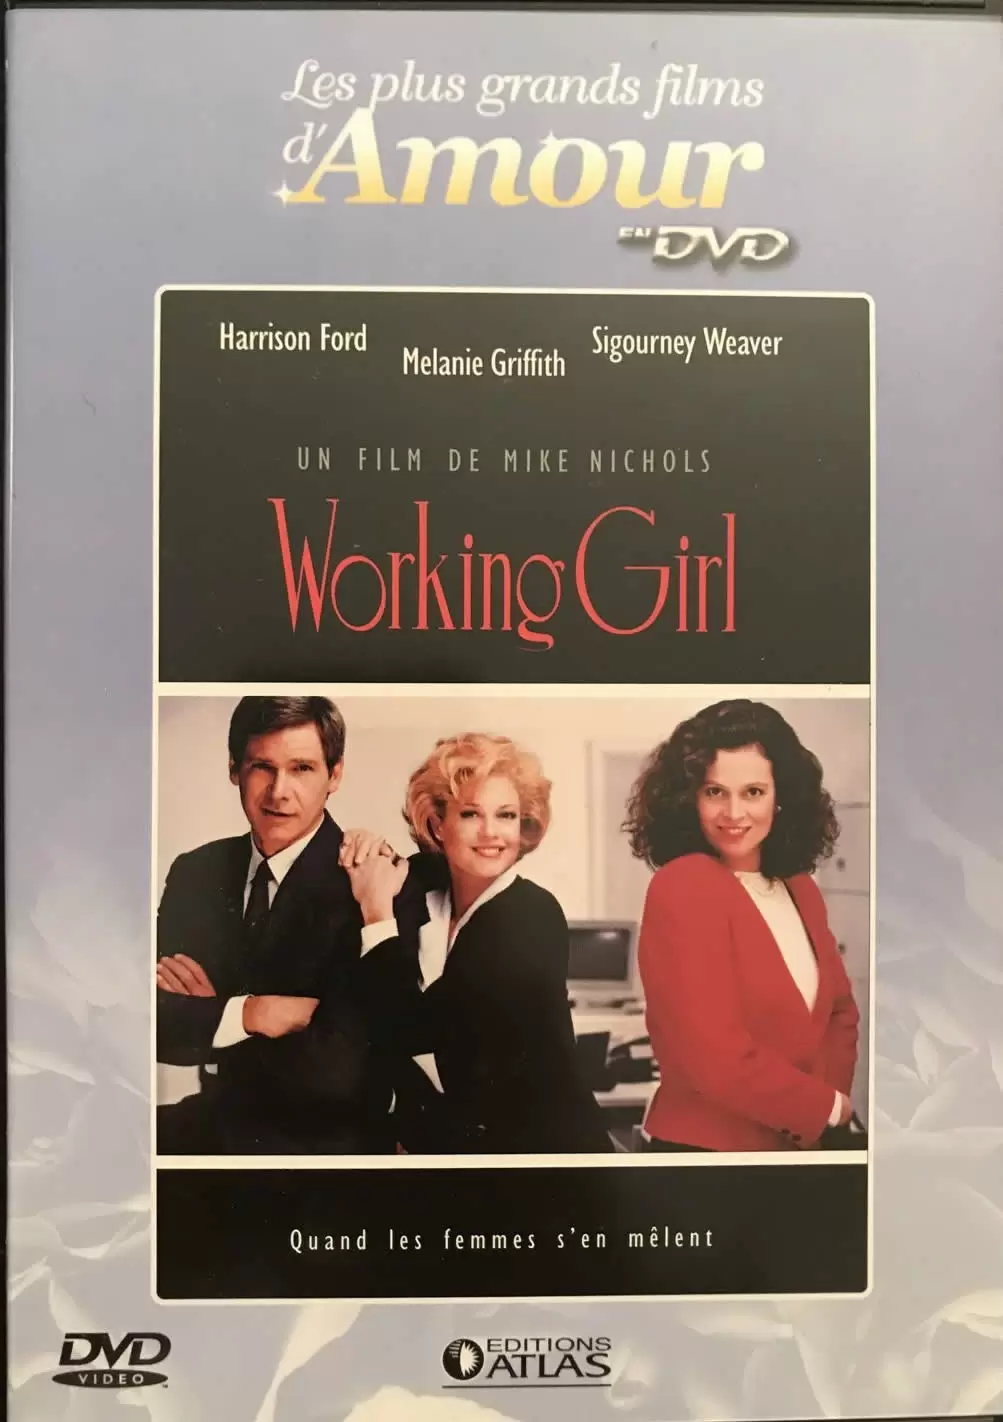 Les plus grands films d\'amour en DVD - Working Girl